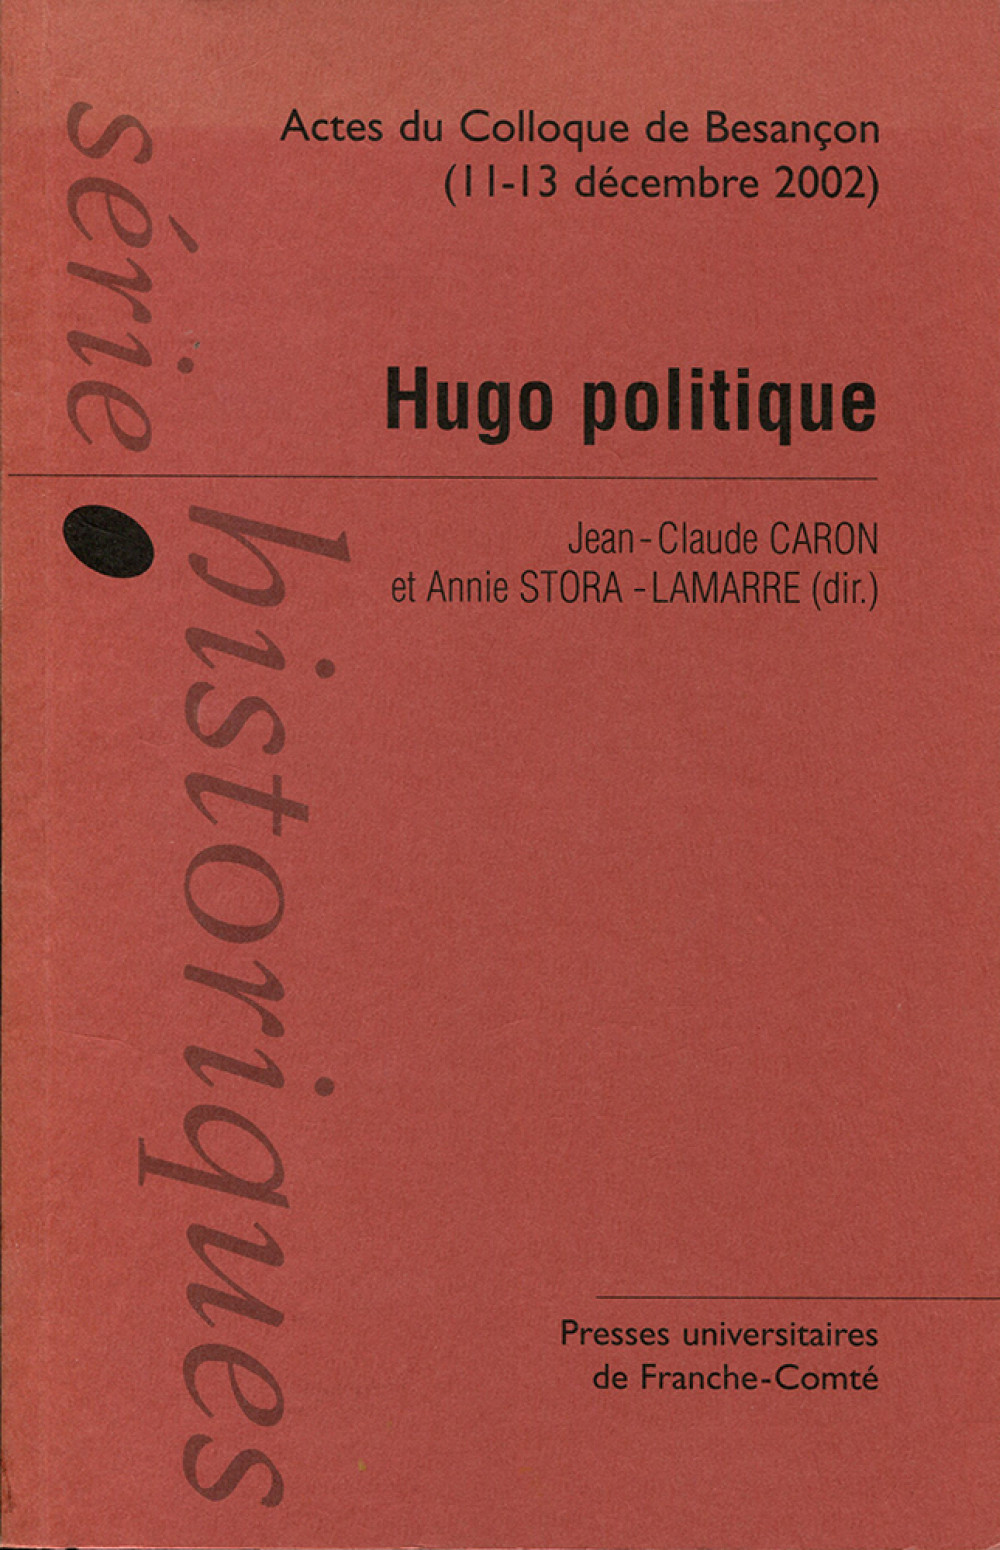 Hugo politique